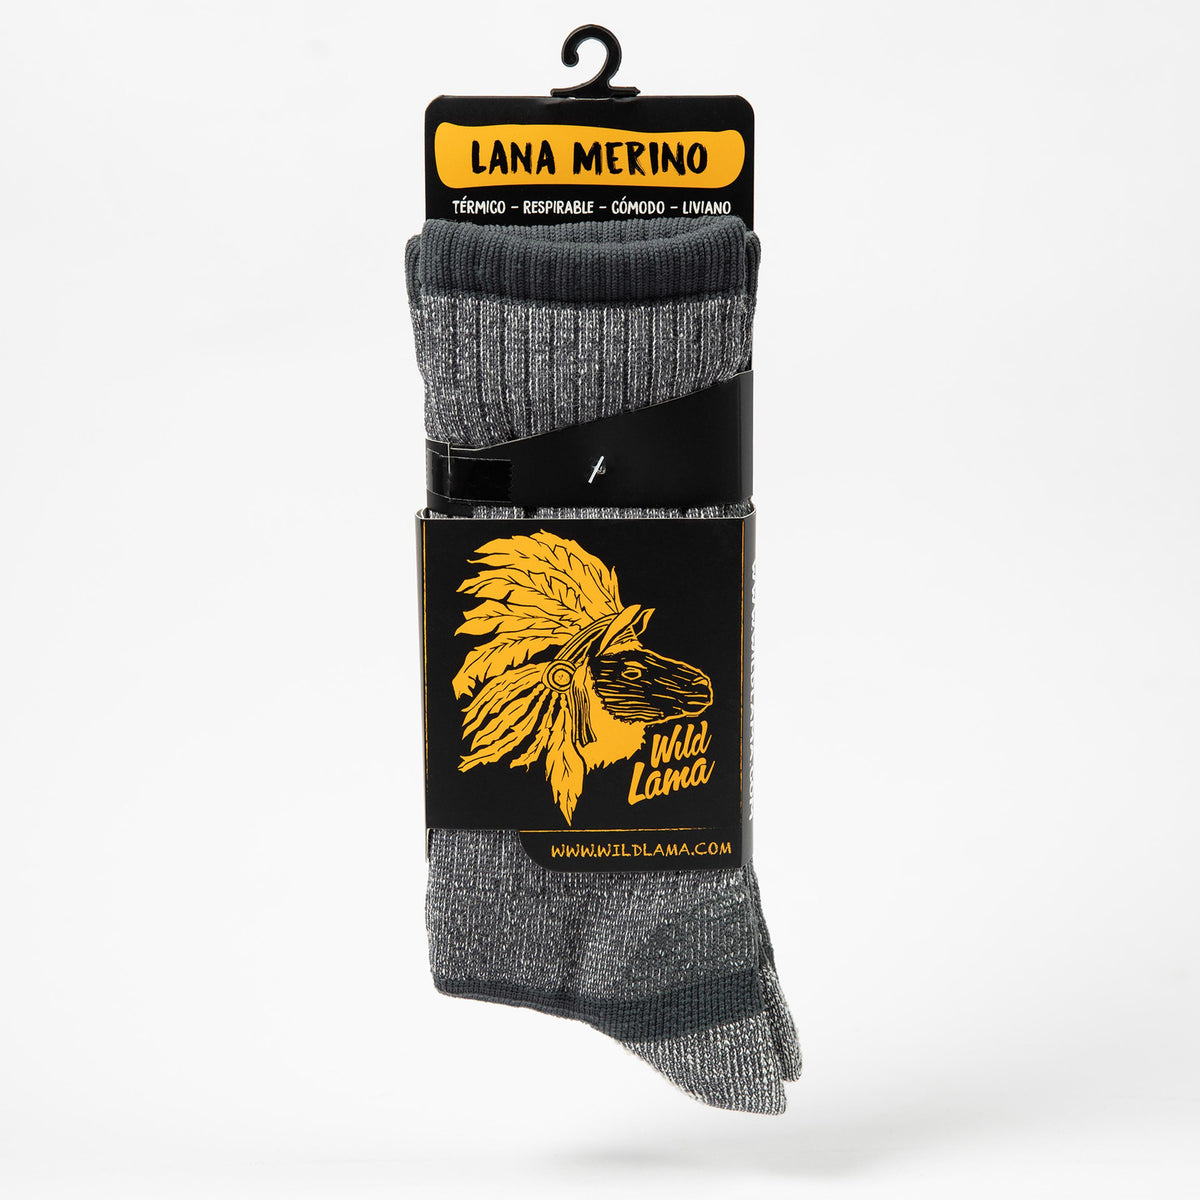 Merino Wool Socks Women - Black and Dark Gray